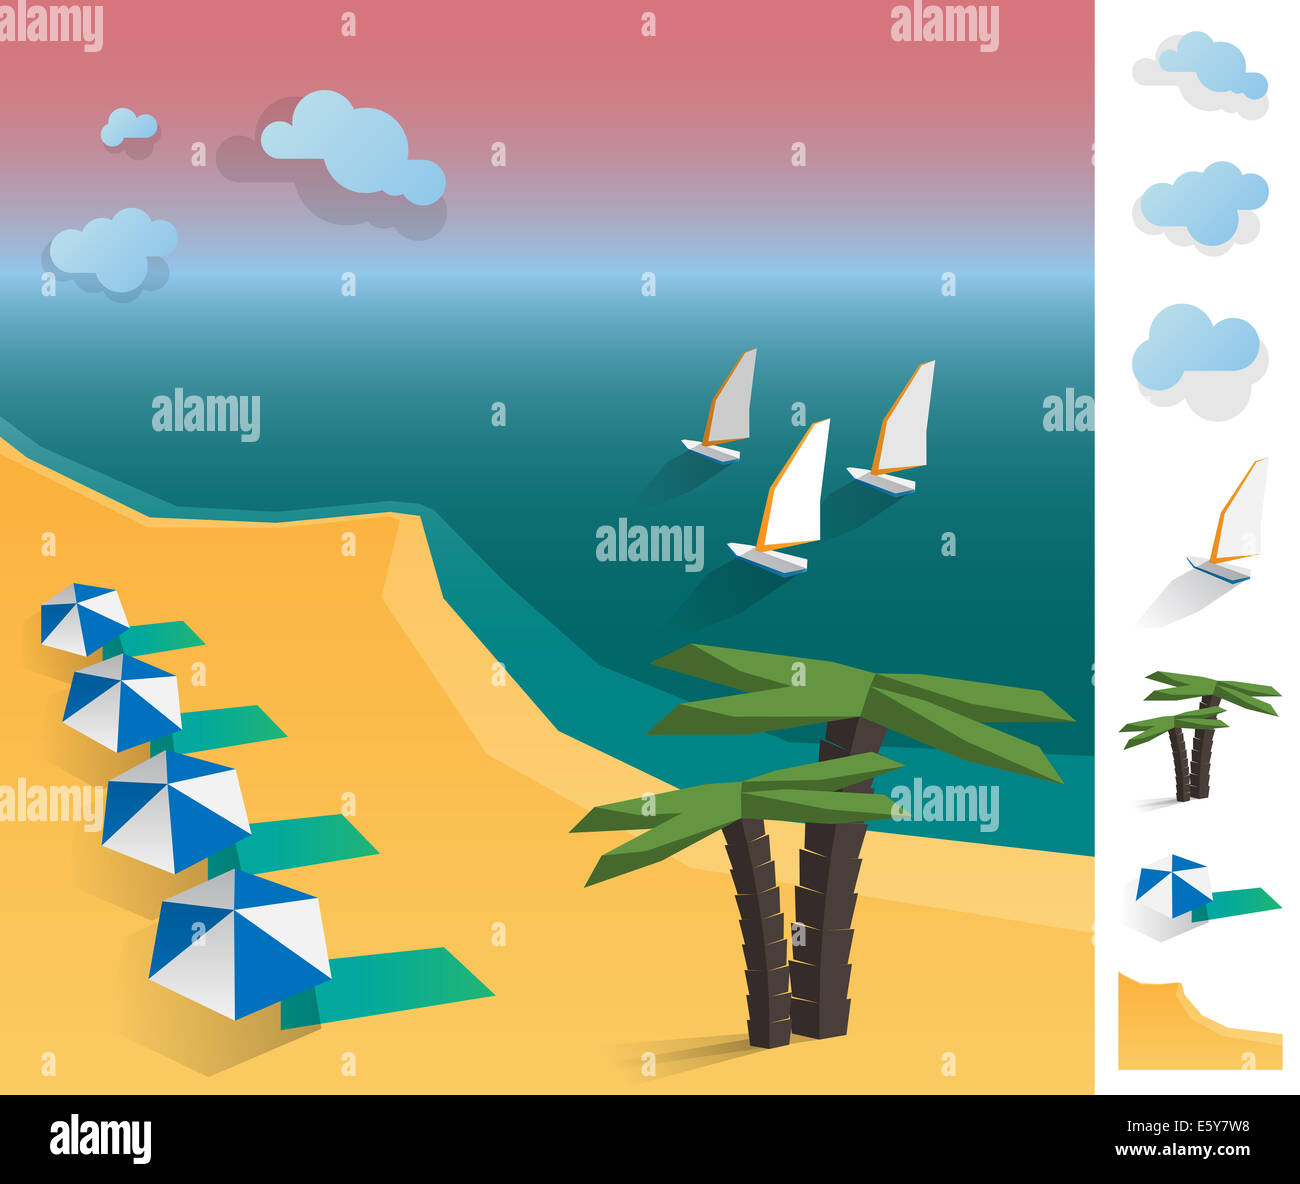 Geometrische Darstellung der exotischen Strand Landschaft an der Küste, mit bunten verwendet Elemente wie Wolke, Wind, Sand, Regenschirm Stockfoto